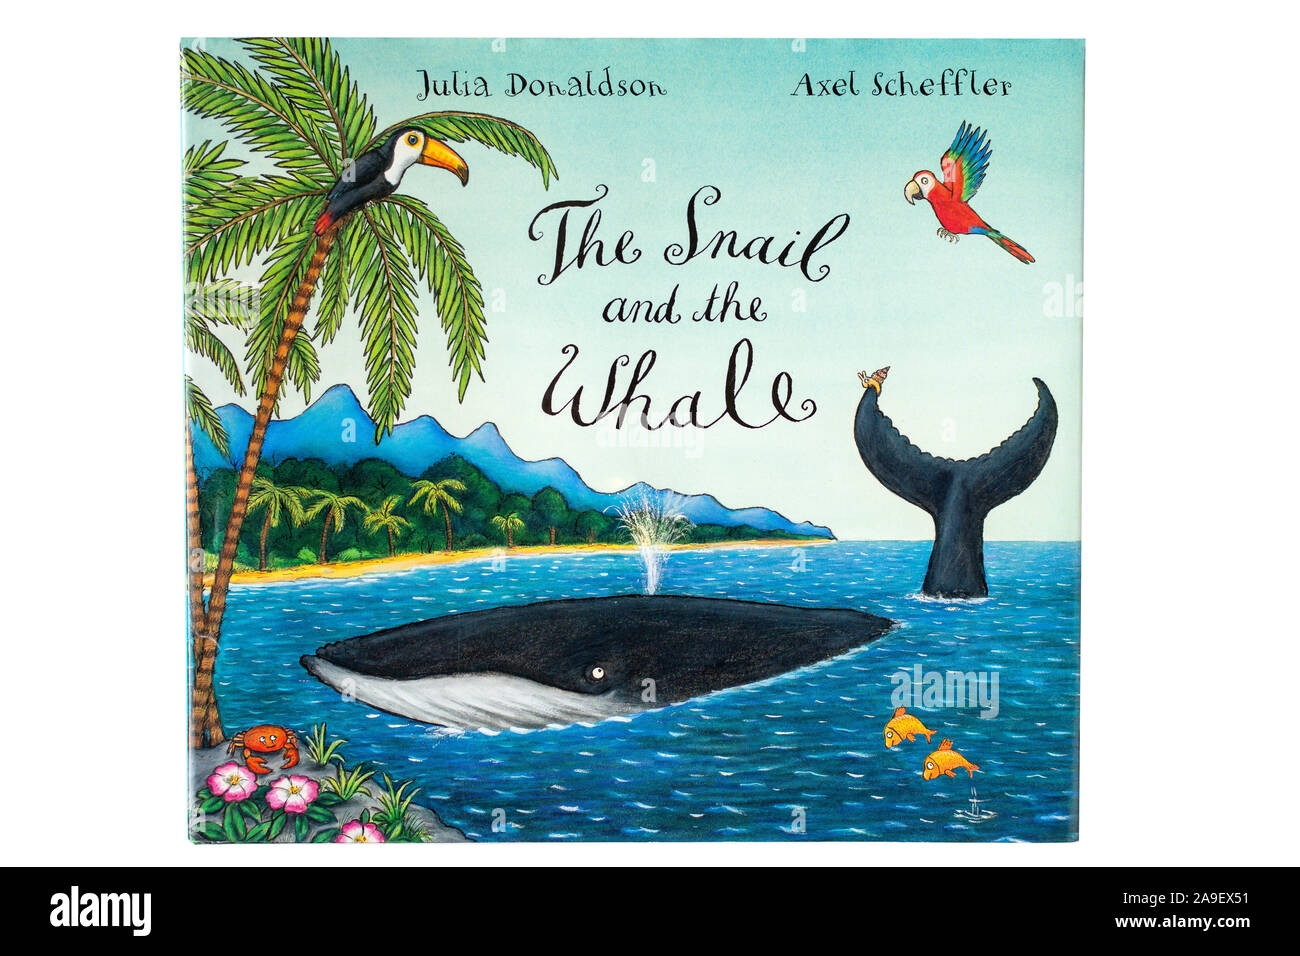 "L'Escargot et la baleine' children's book de Julia Donaldson et Axel Scheffler, Greater London, Angleterre, Royaume-Uni Banque D'Images